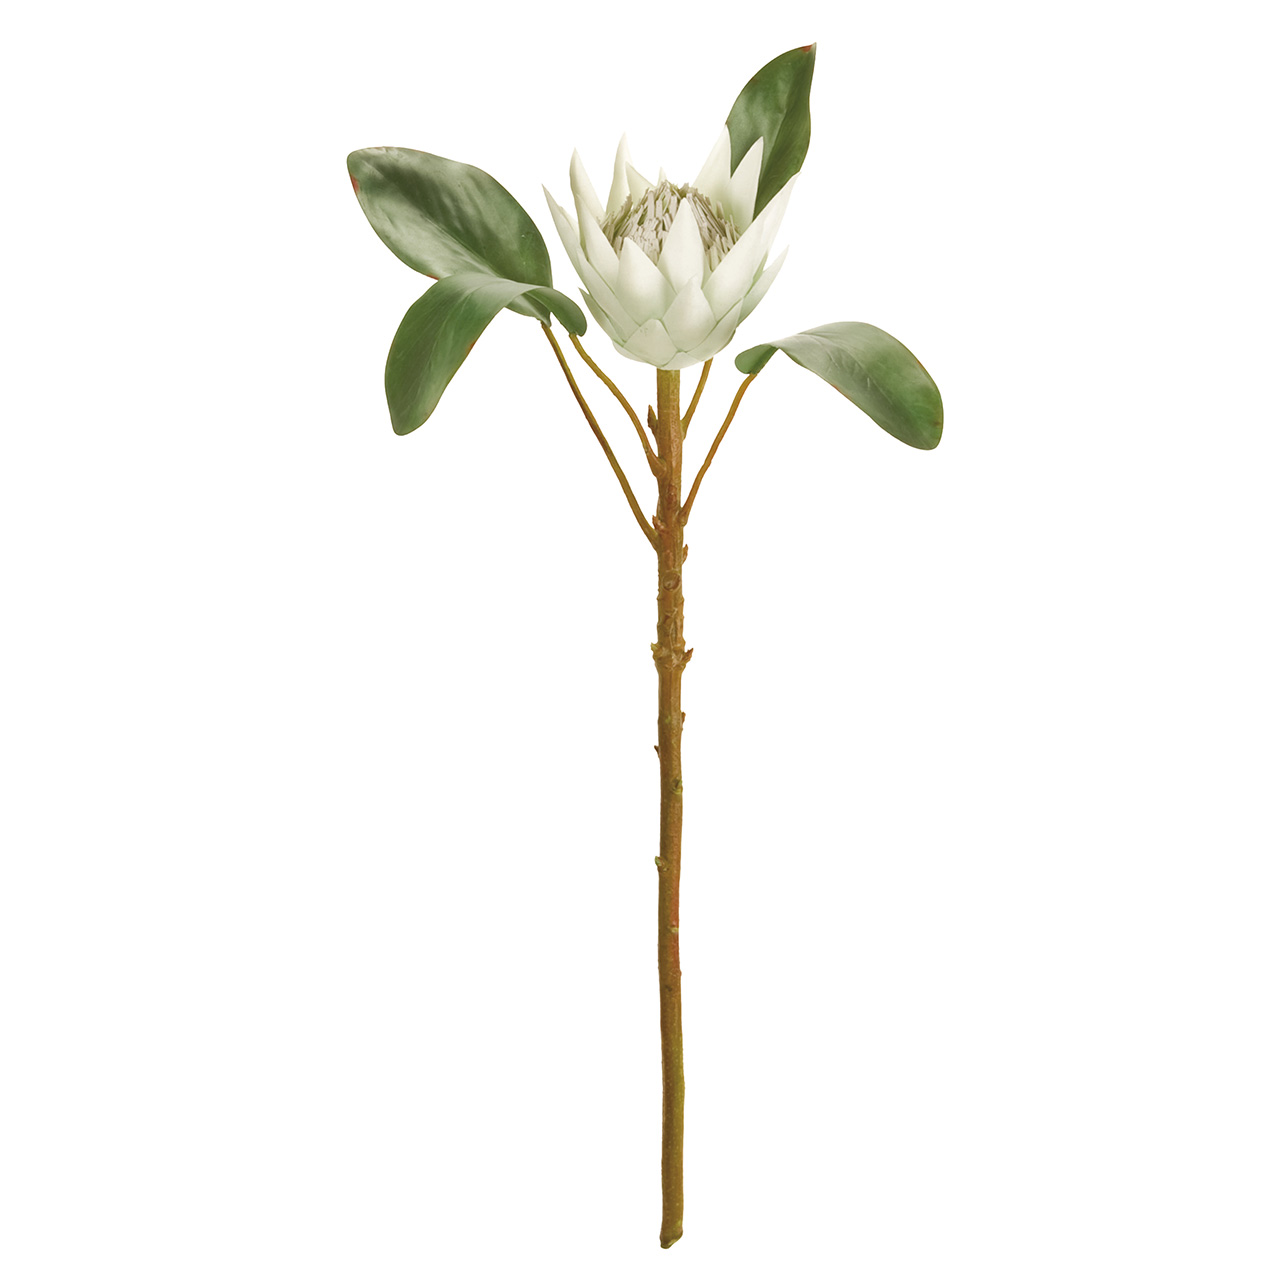 マイフラ 通販 Magiq アリュールプロテア クリームグリーン アーティフィシャルフラワー 造花 Fm 001 トロピカルフラワー クリームグリーン Magiq アーティフィシャルフラワー 造花 全国にmagiq 花器 花資材などをお届けします